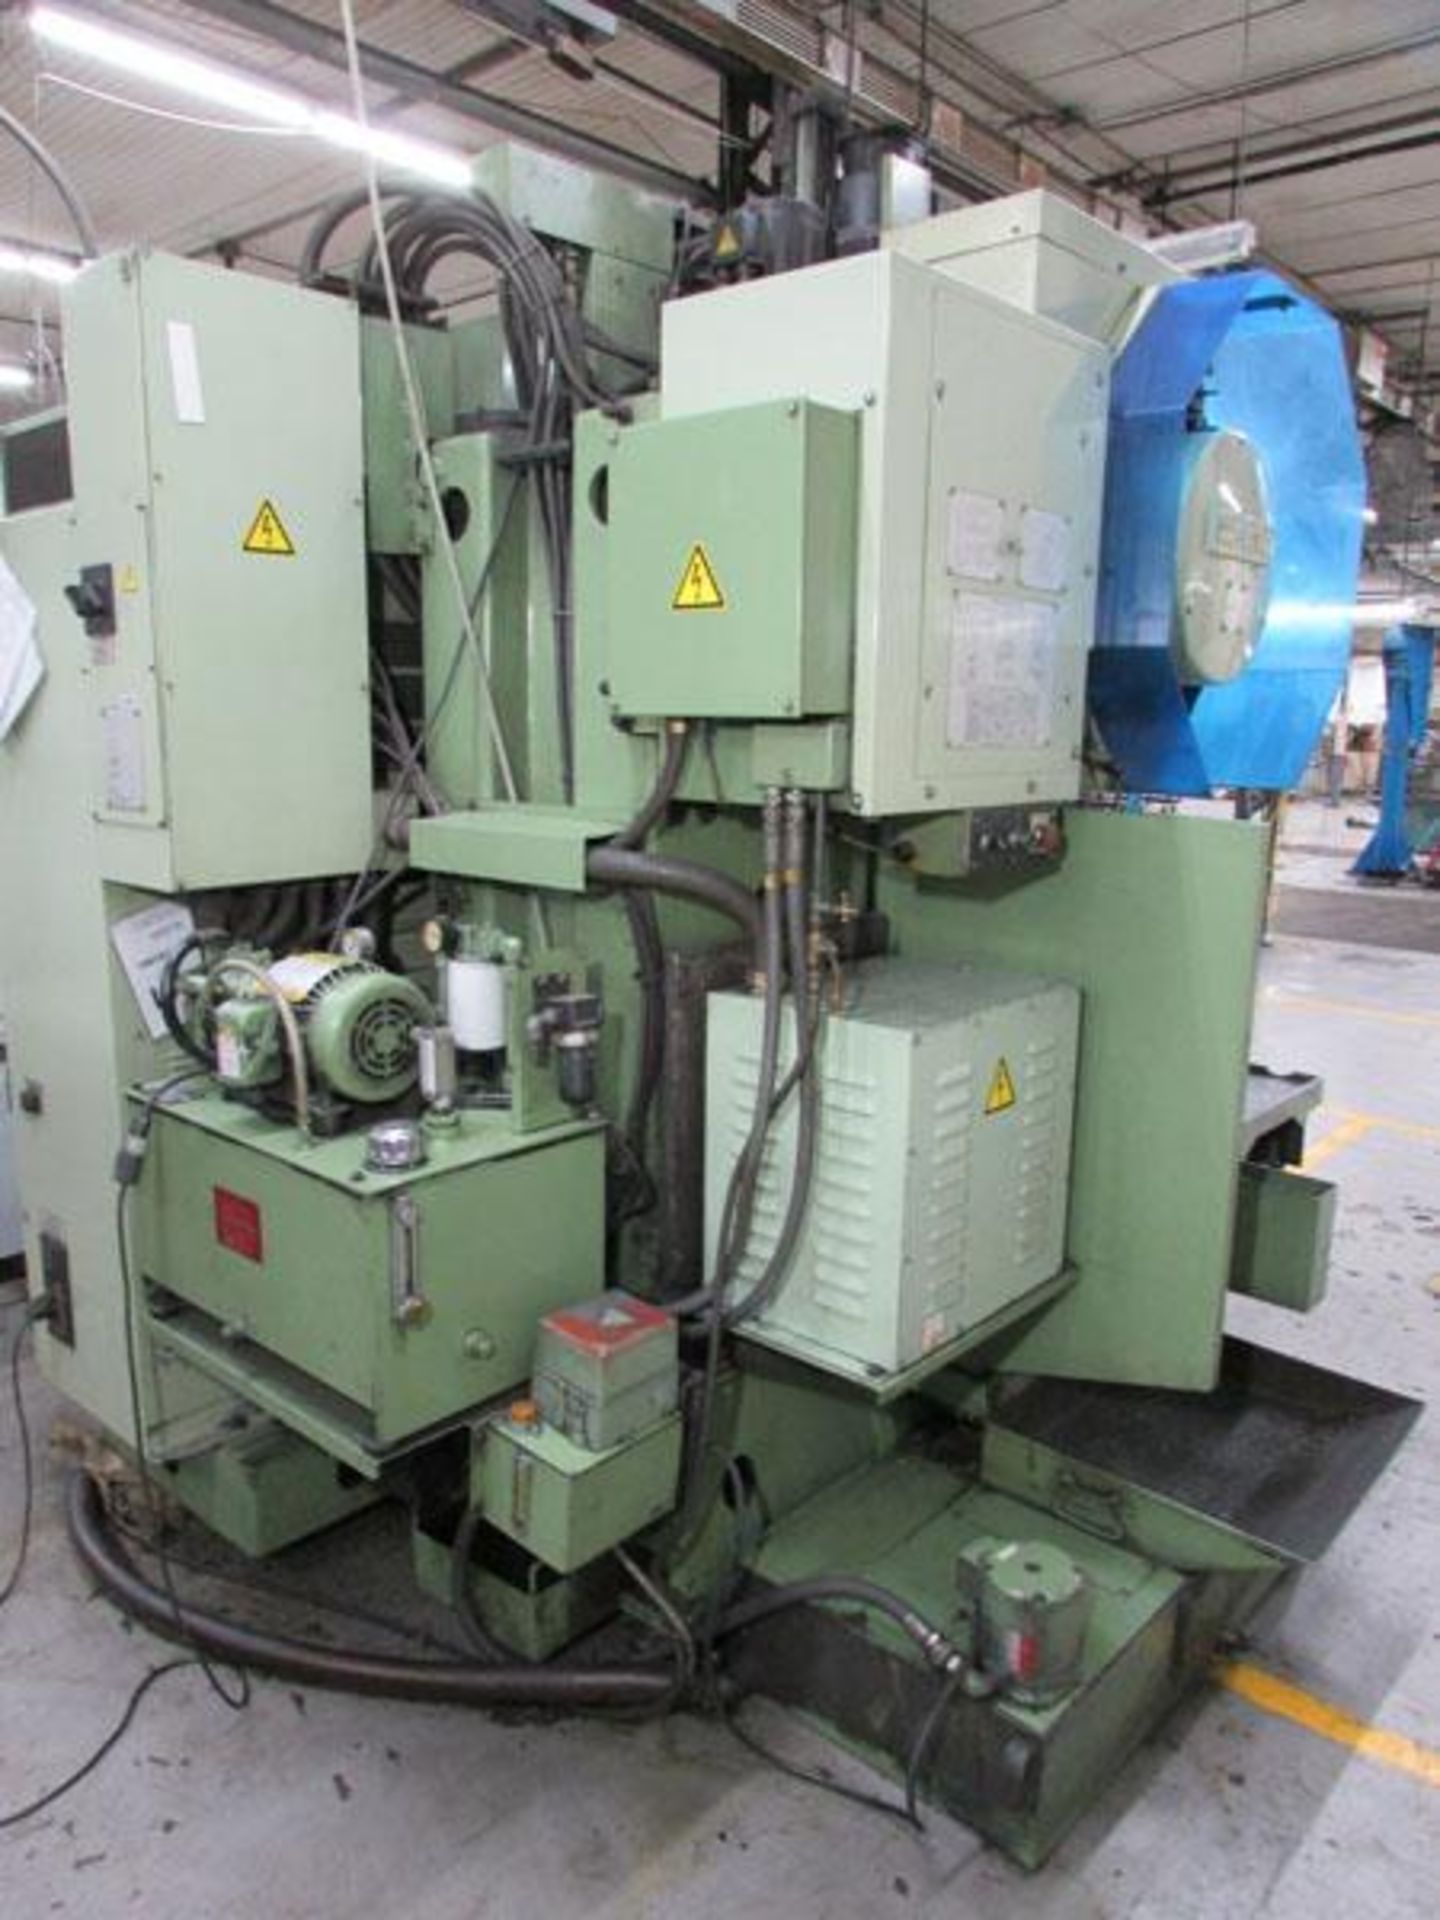 Okuma MC-4VAE Vertical CNC Milling Machine - Image 12 of 13